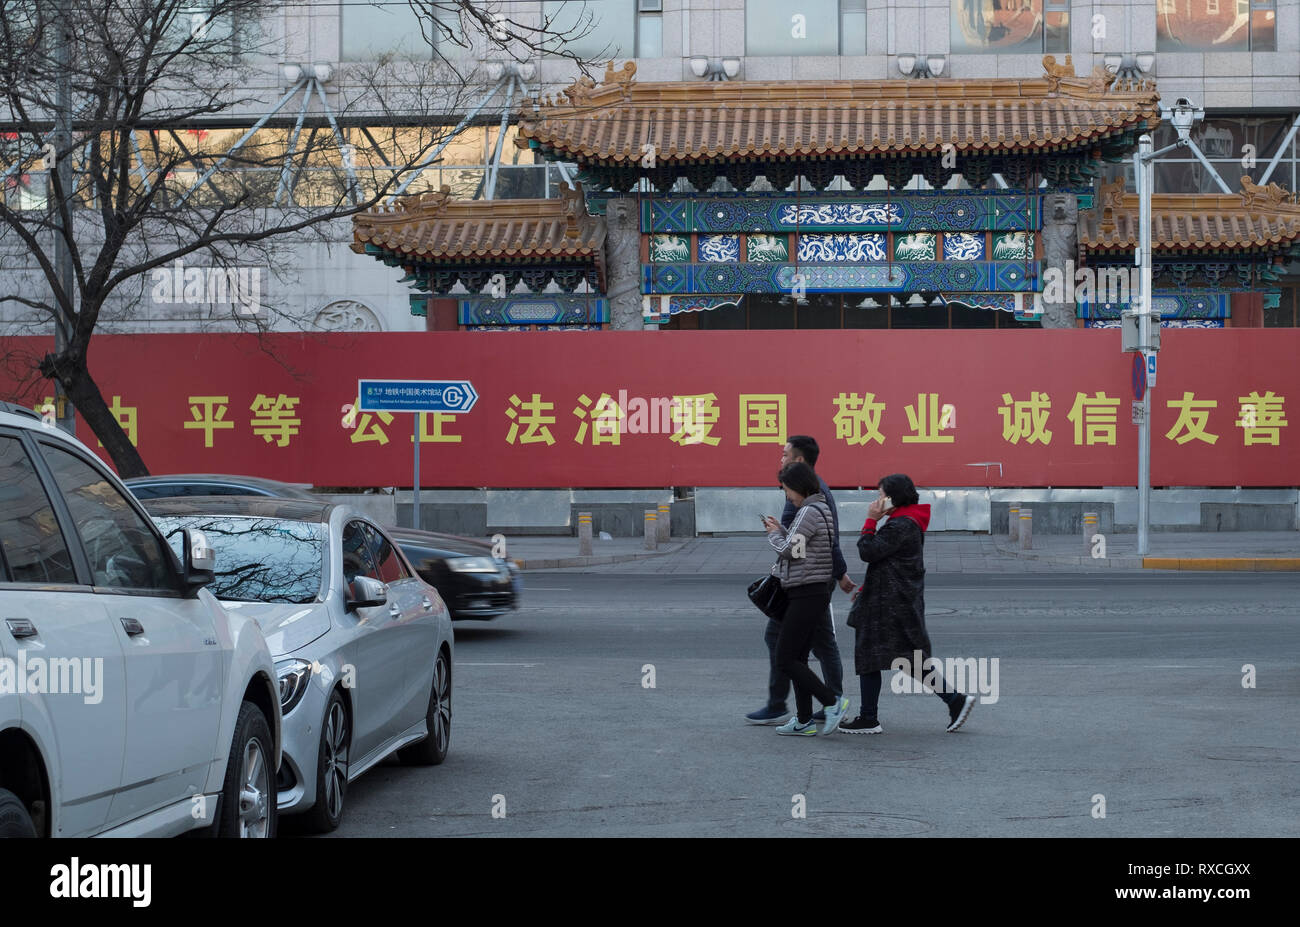 Eine Hinweistafel mit dem Core sozialistische Werte in Peking, China. Stockfoto